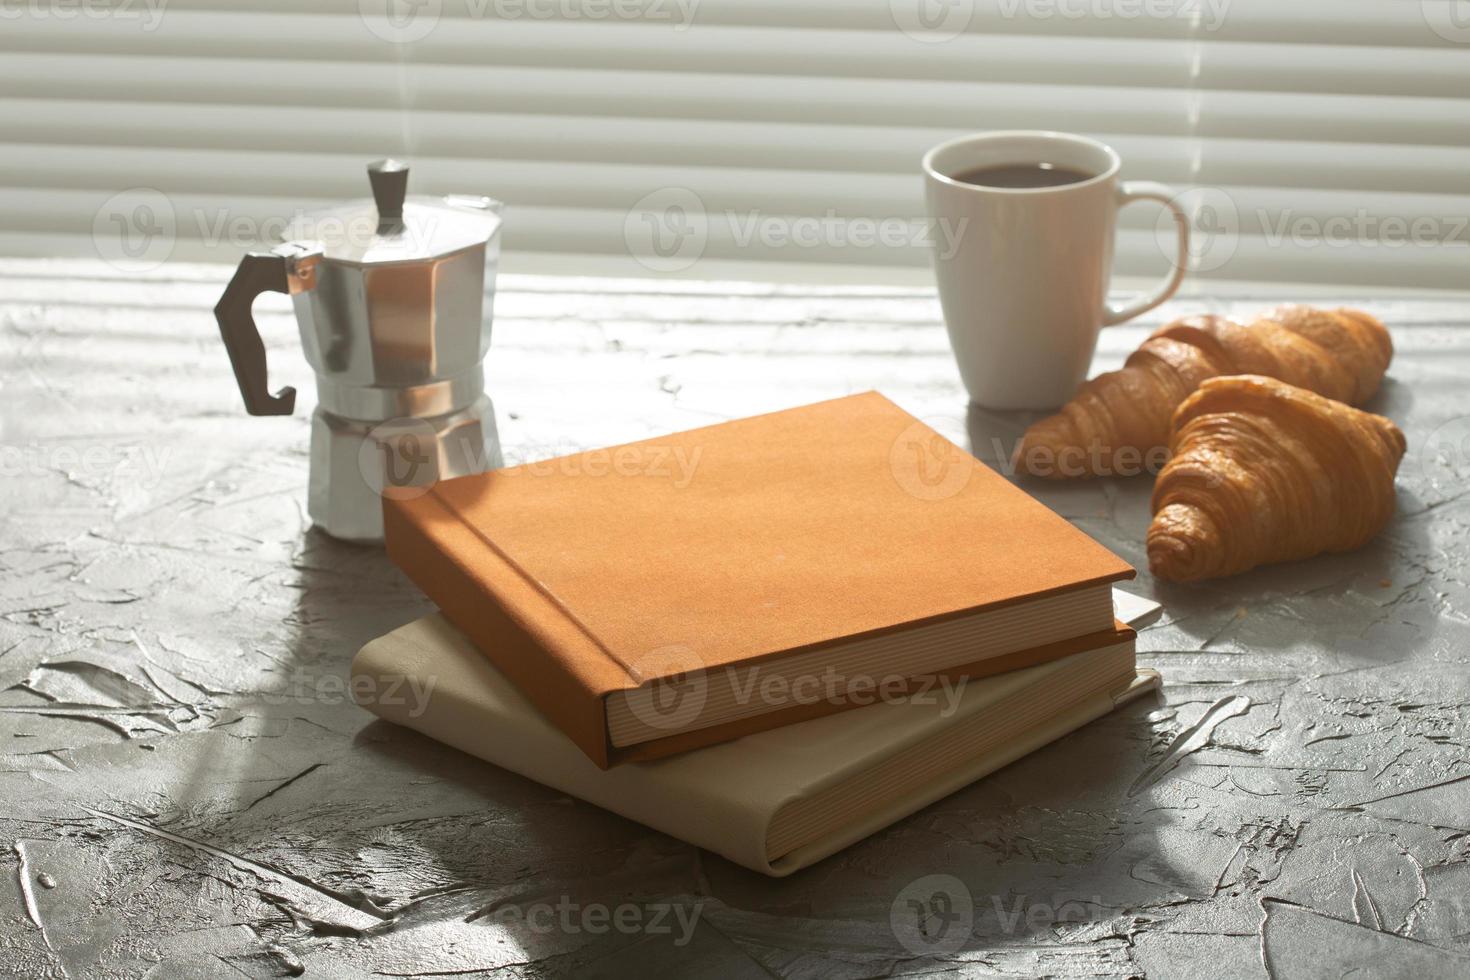 ancora vita per piacevole mattina caffè turk tazza e Cornetti con Due libri su il tavolo. pranzo rompere concetto o inizio il mattina foto